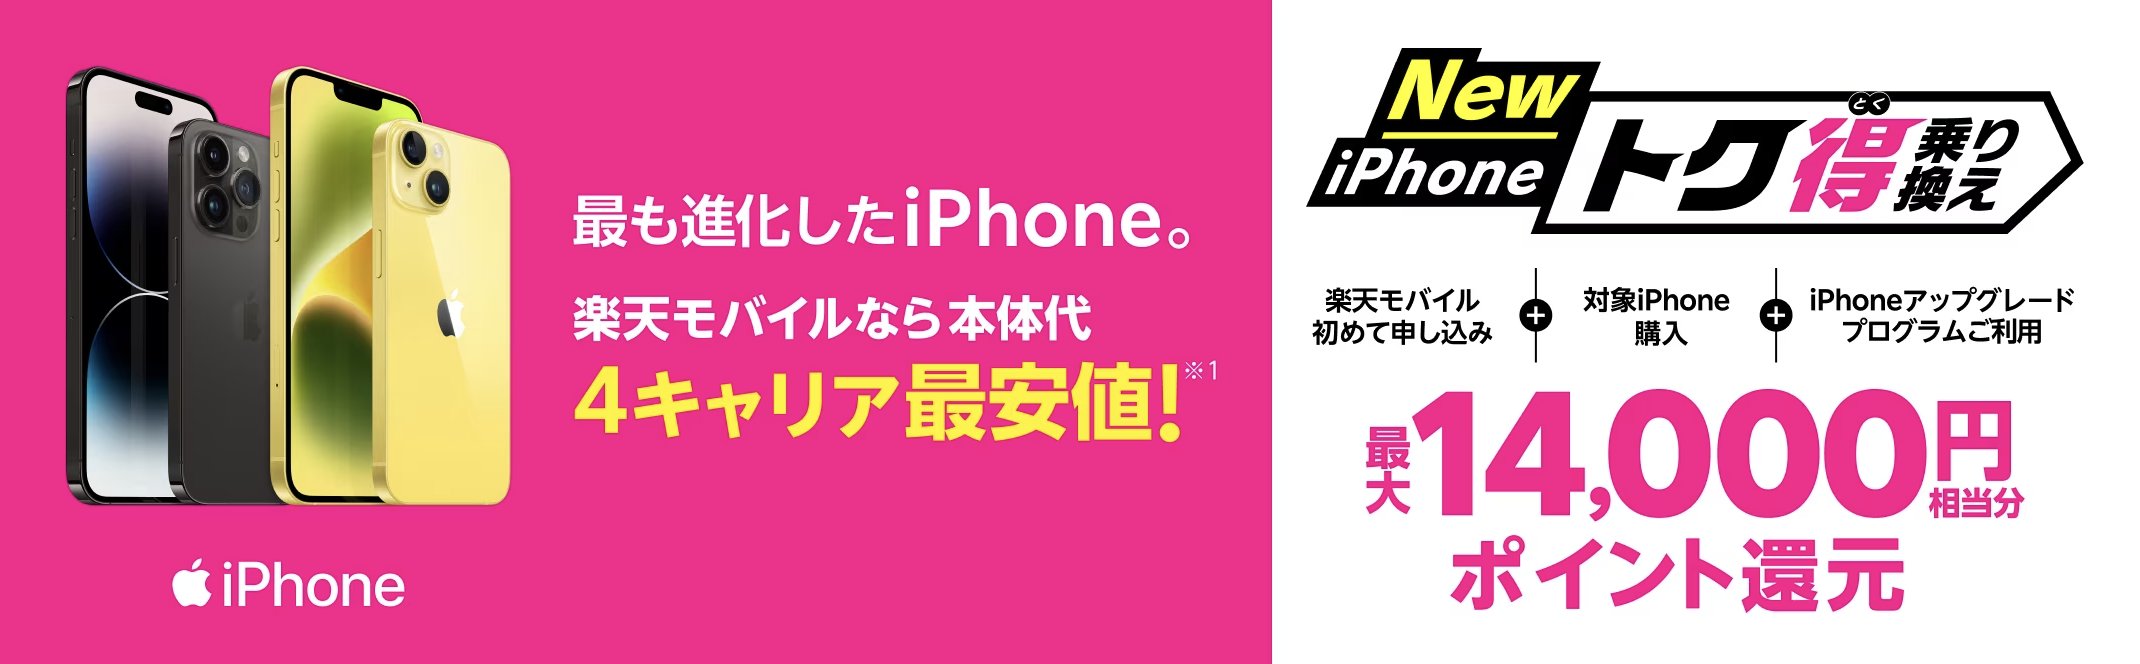 楽天モバイル「iPhoneトク得乗り換え」キャンペーン